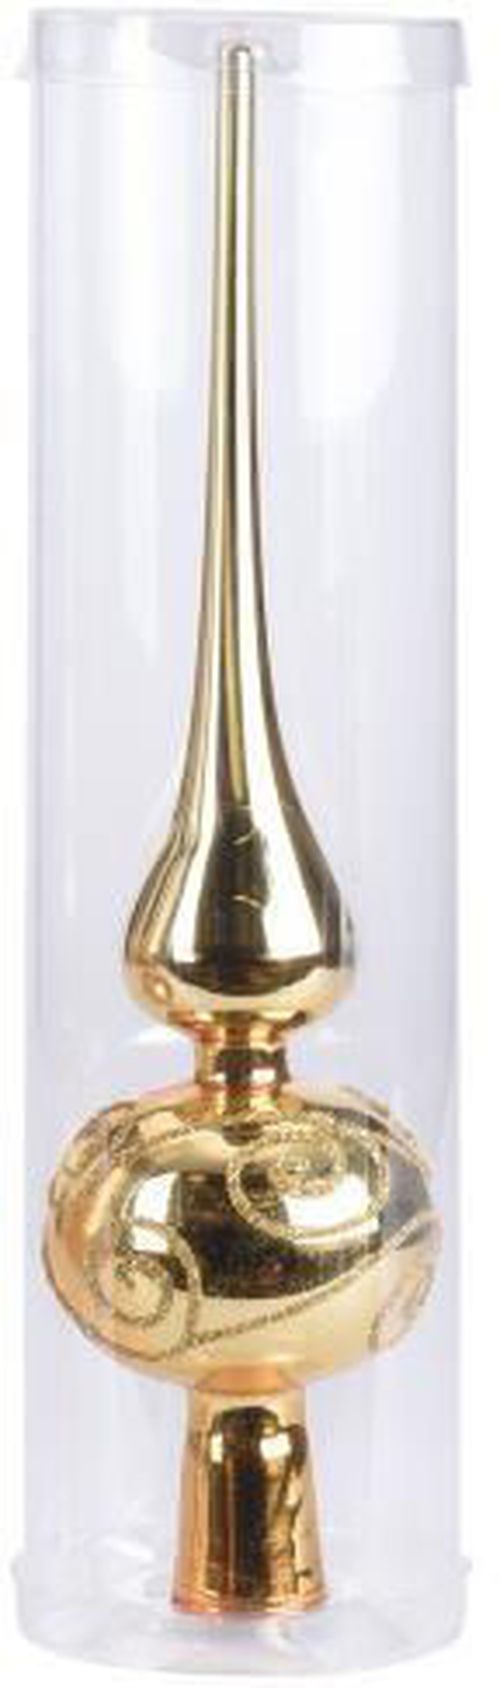 купить Новогодний декор Promstore 32954 Верхушка елочная стеклянная 25сm, золотая в Кишинёве 